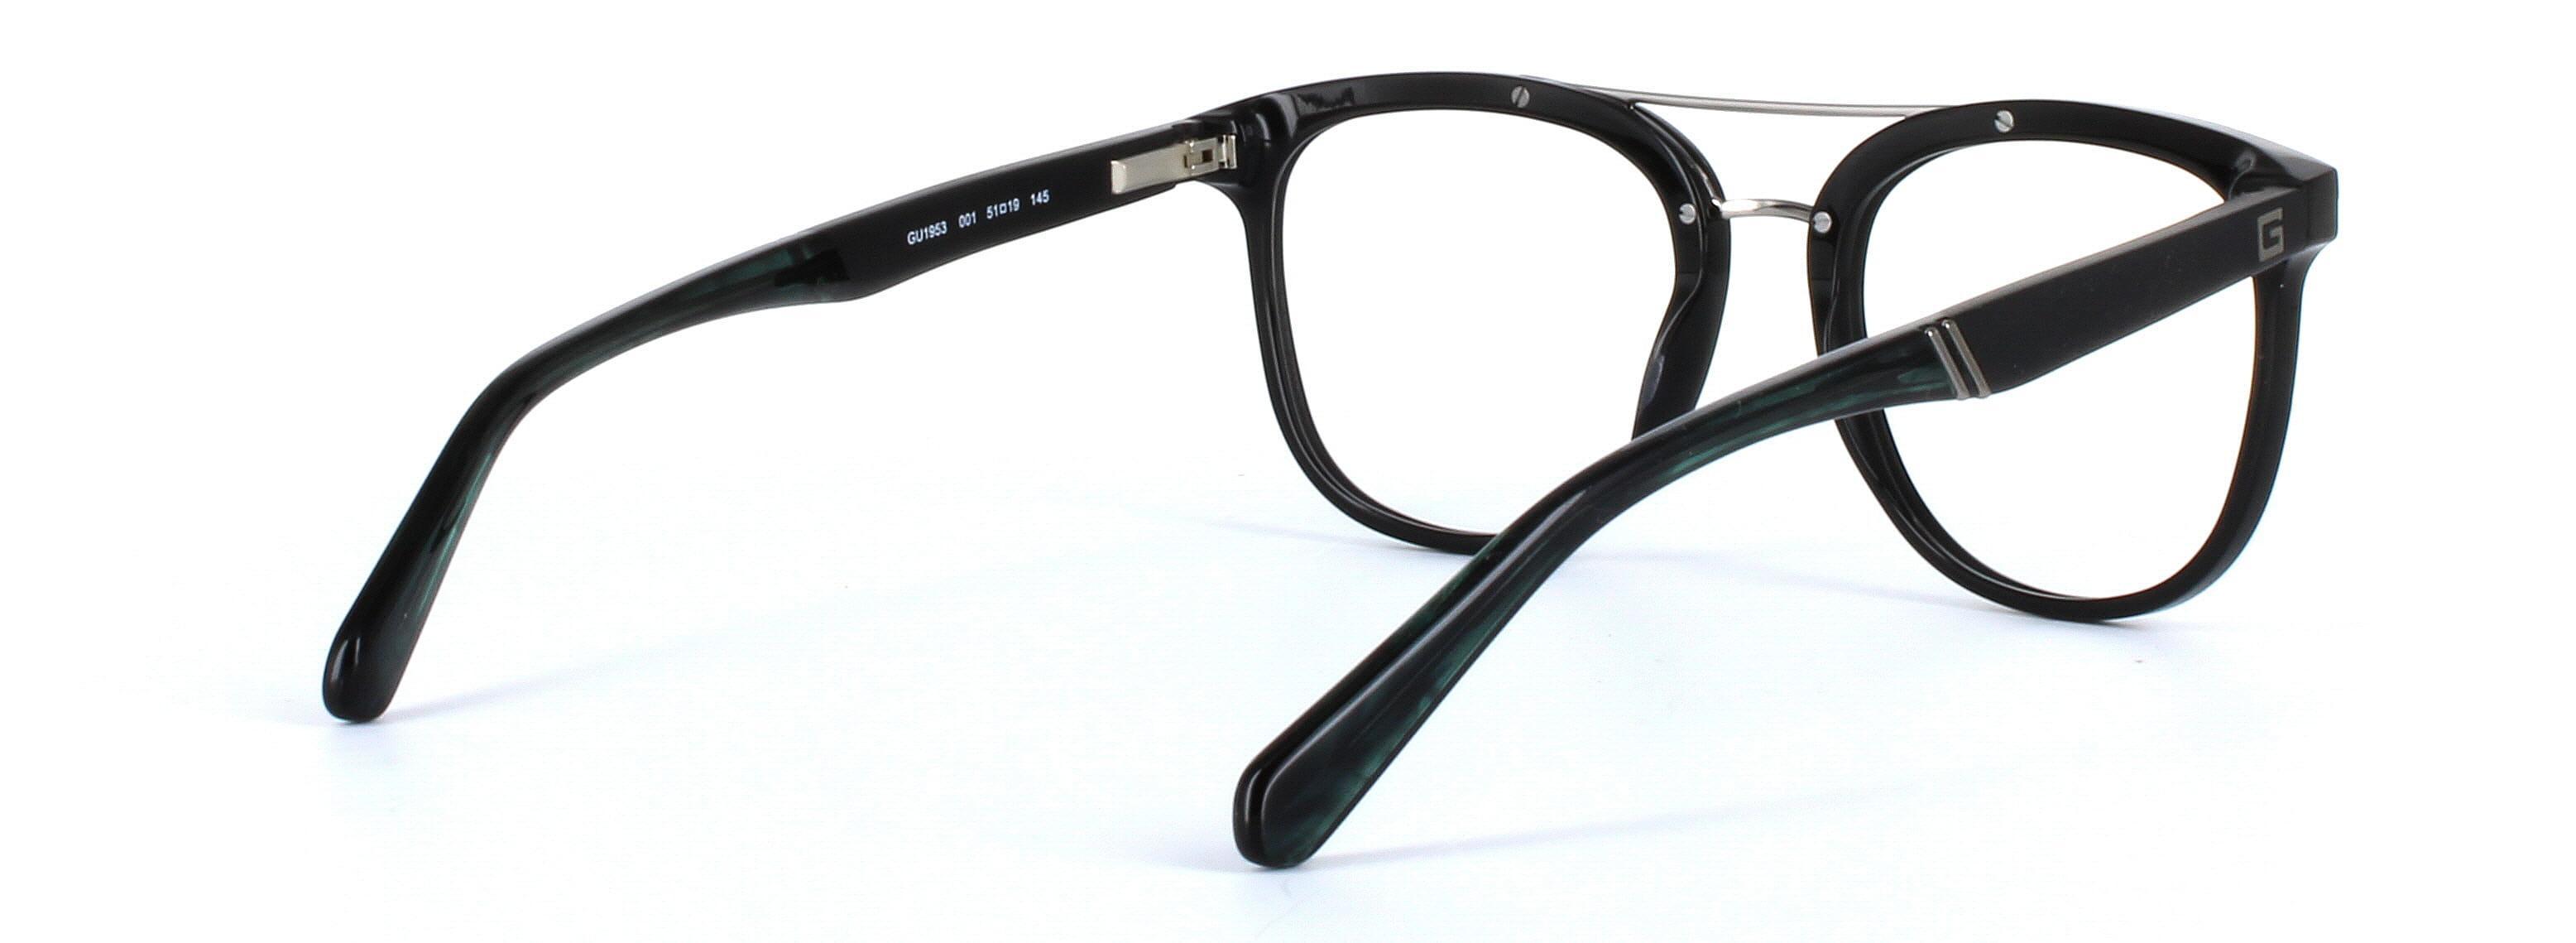 GUESS (GU1953-001) Black Full Rim Square Acetate Glasses - Image View 4